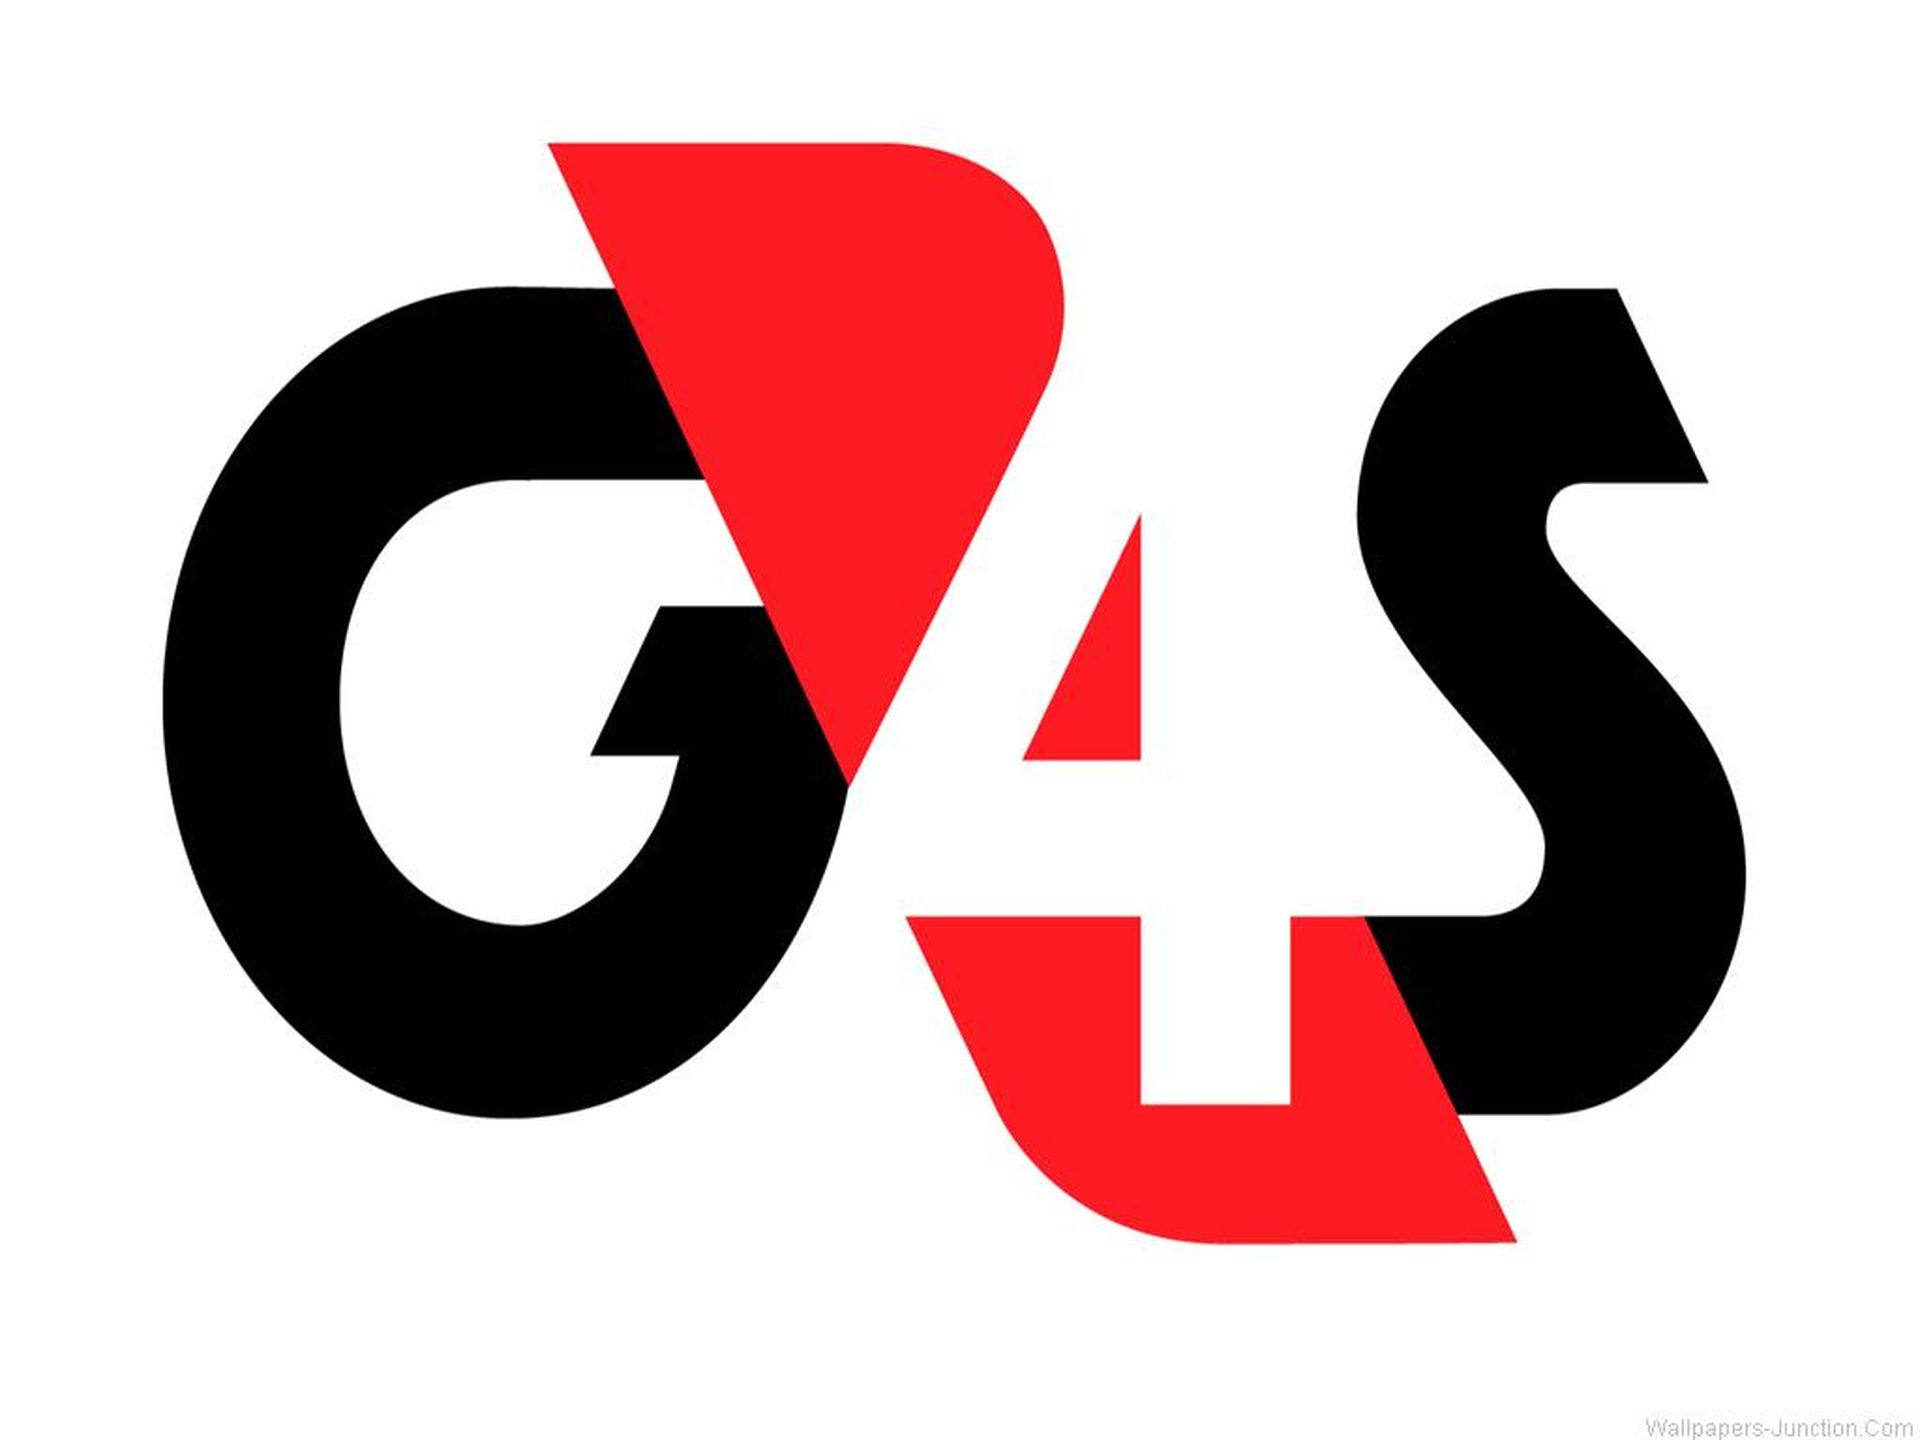 G4s (Group 4 Securicor). №2 g4s. Group 4 Securicor. Bocanegra logo eps. Uk g